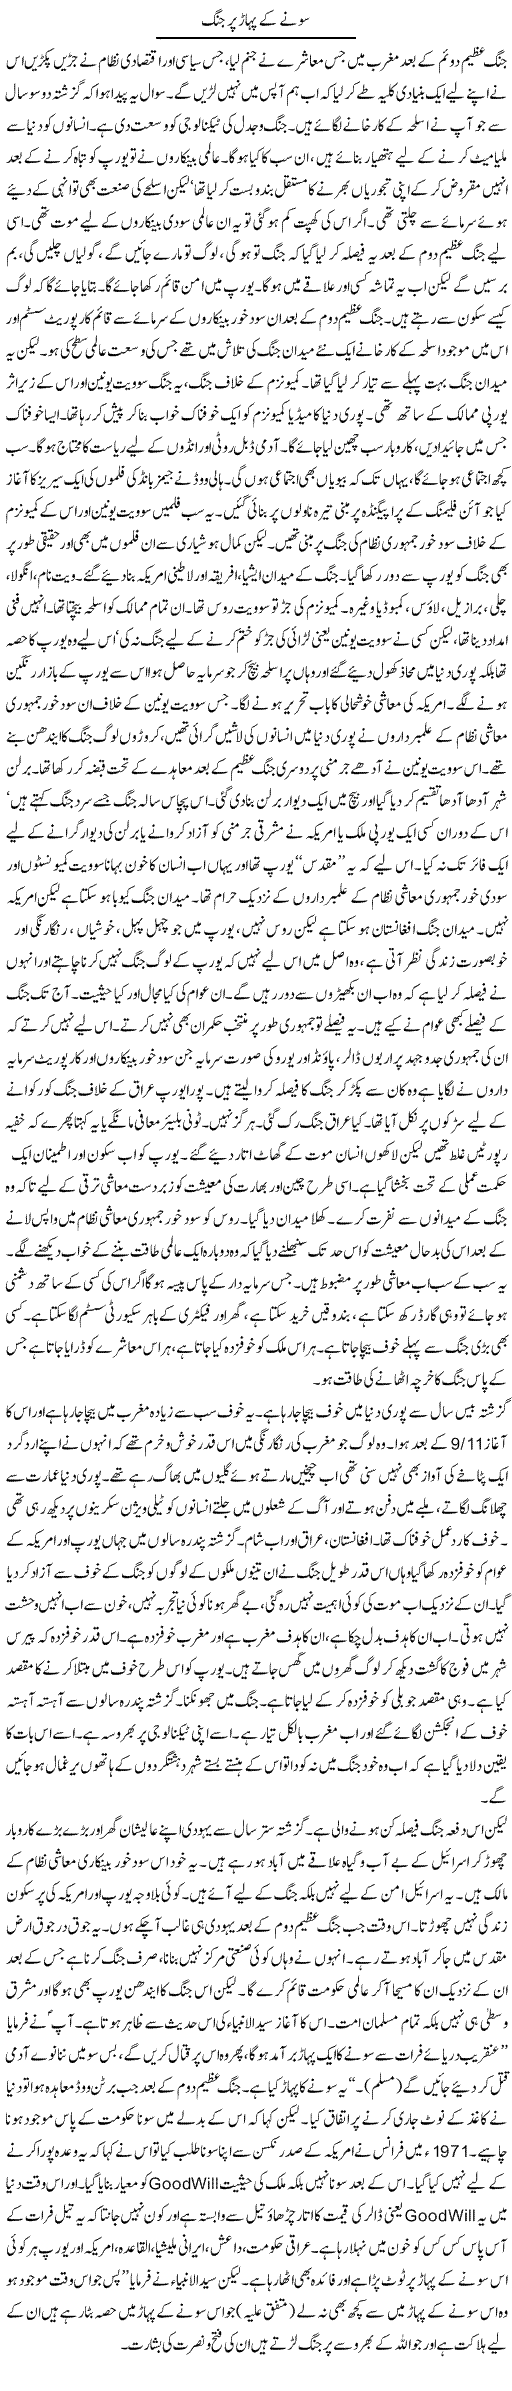 Sonay Ke Pahar Par Jung (1) | Orya Maqbool Jan | Daily Urdu Columns